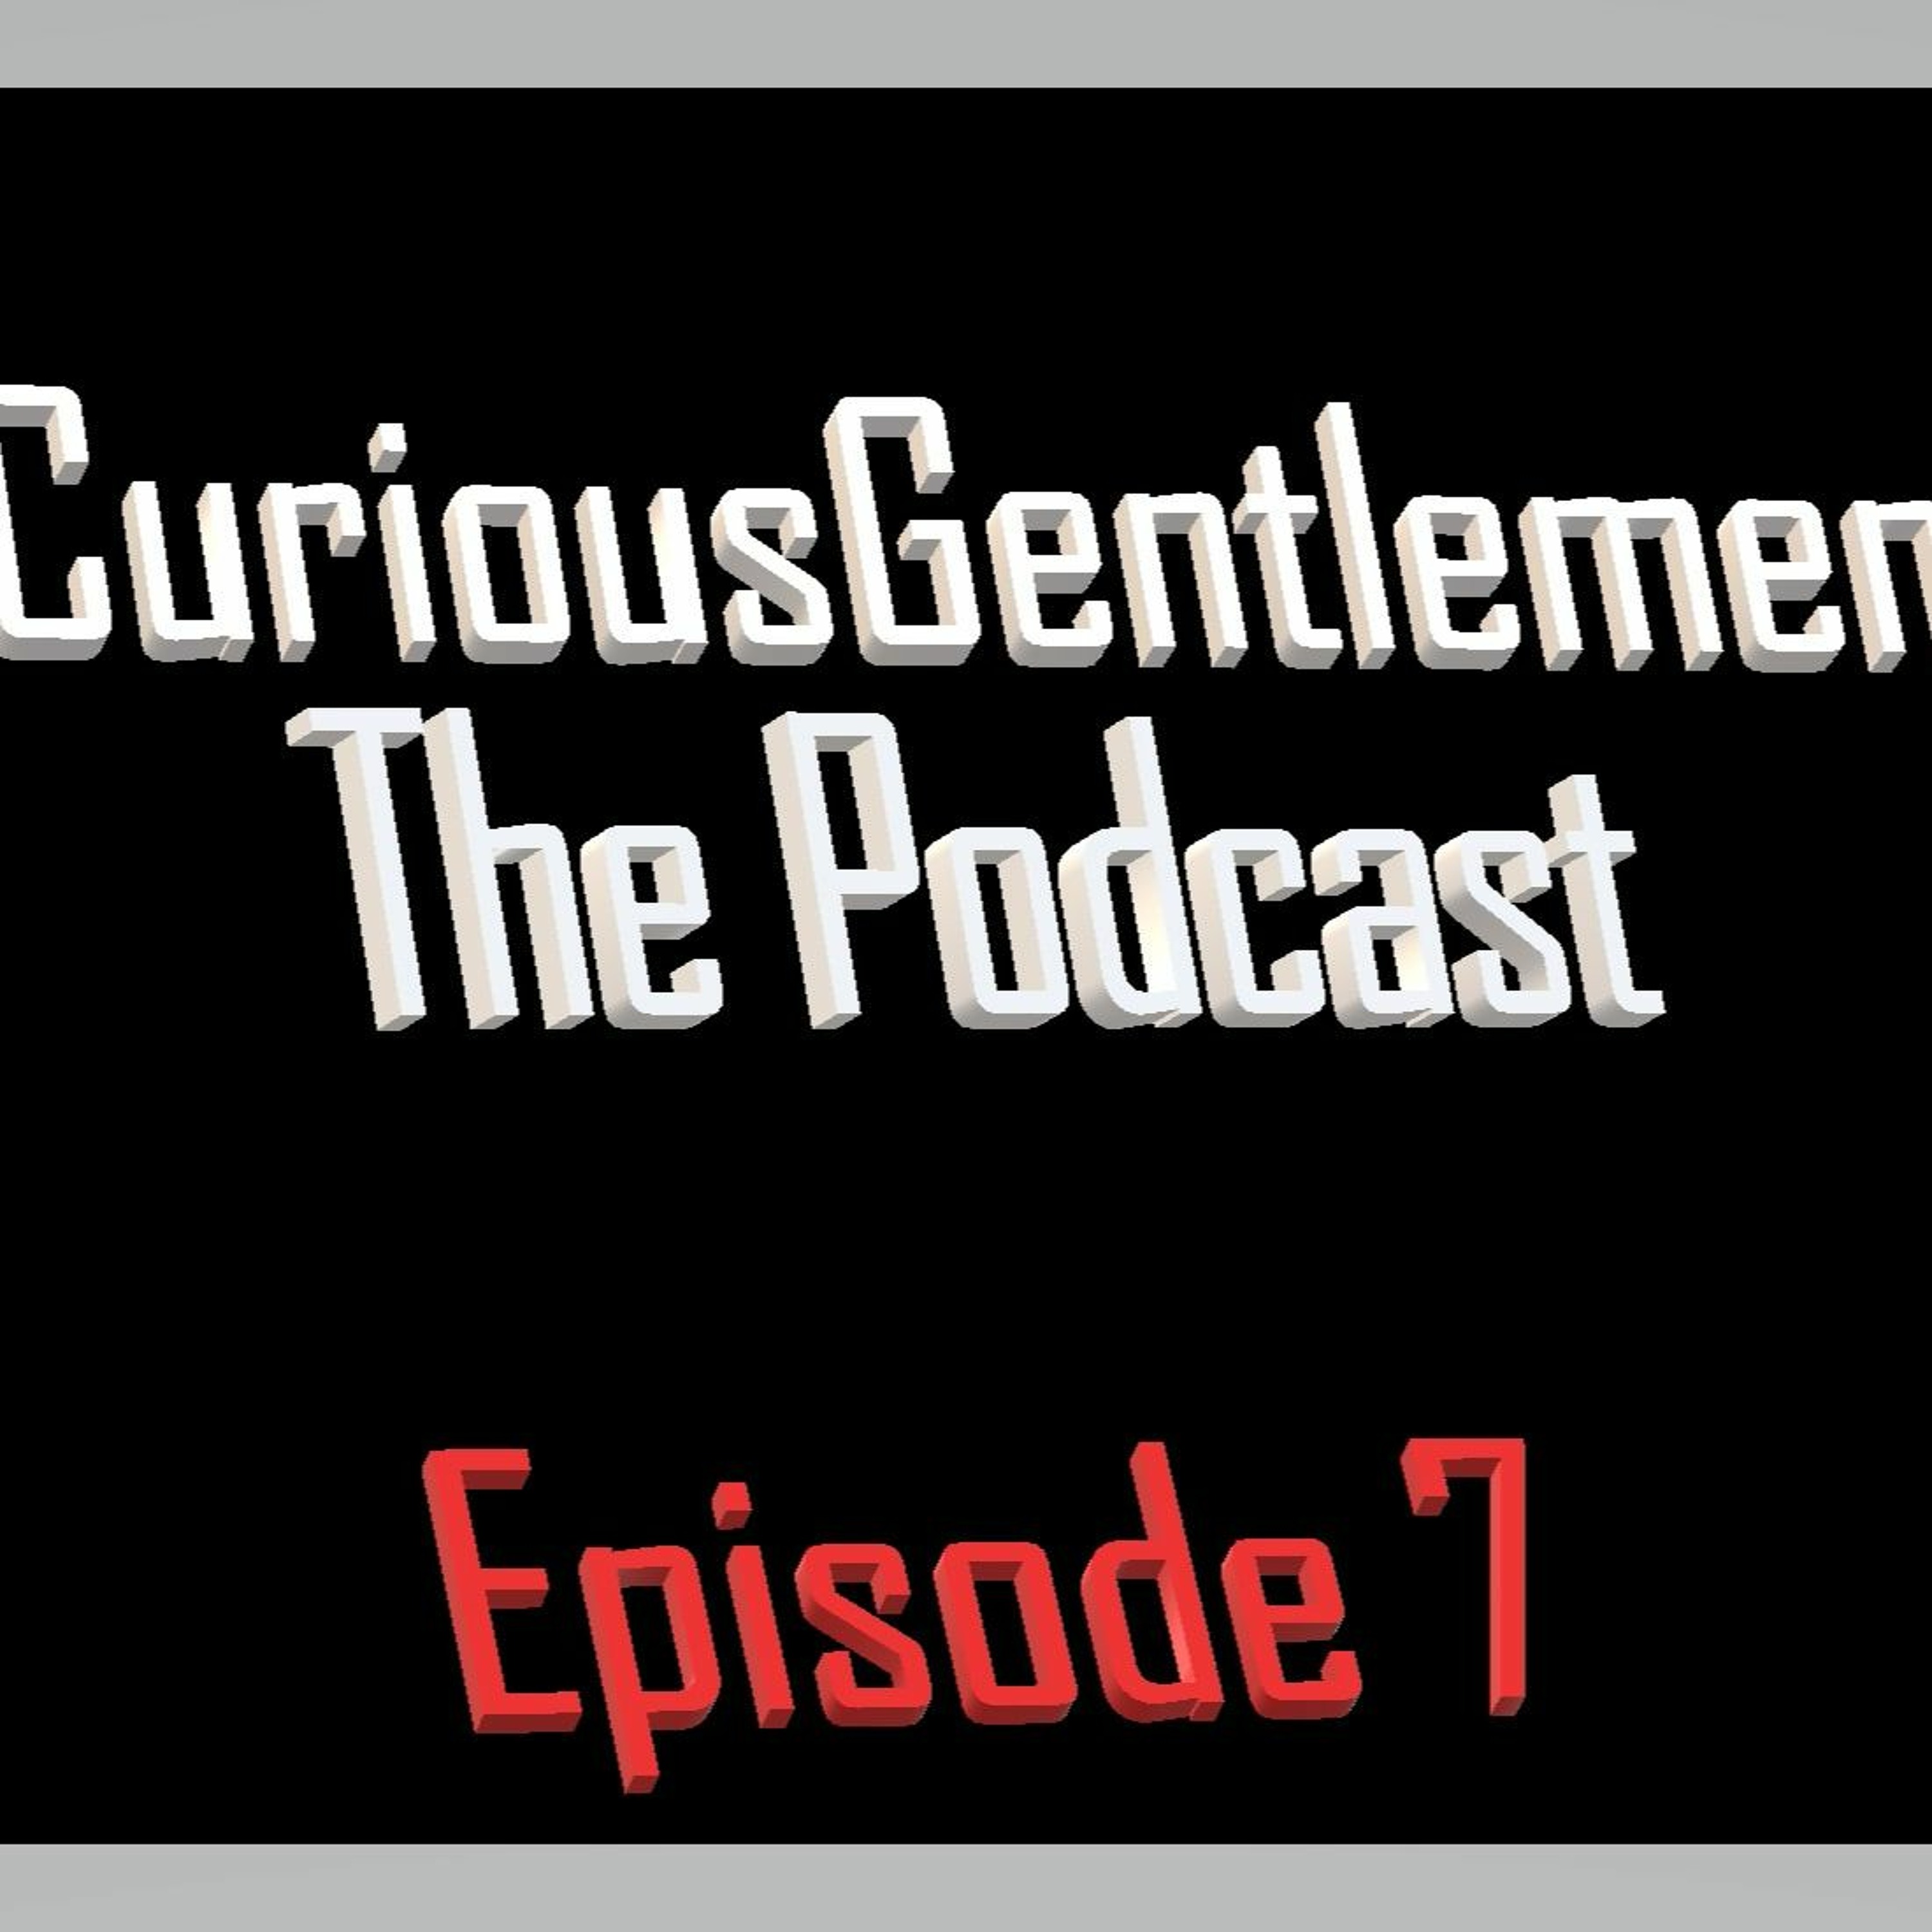 Curious Gentlemen Episode 5